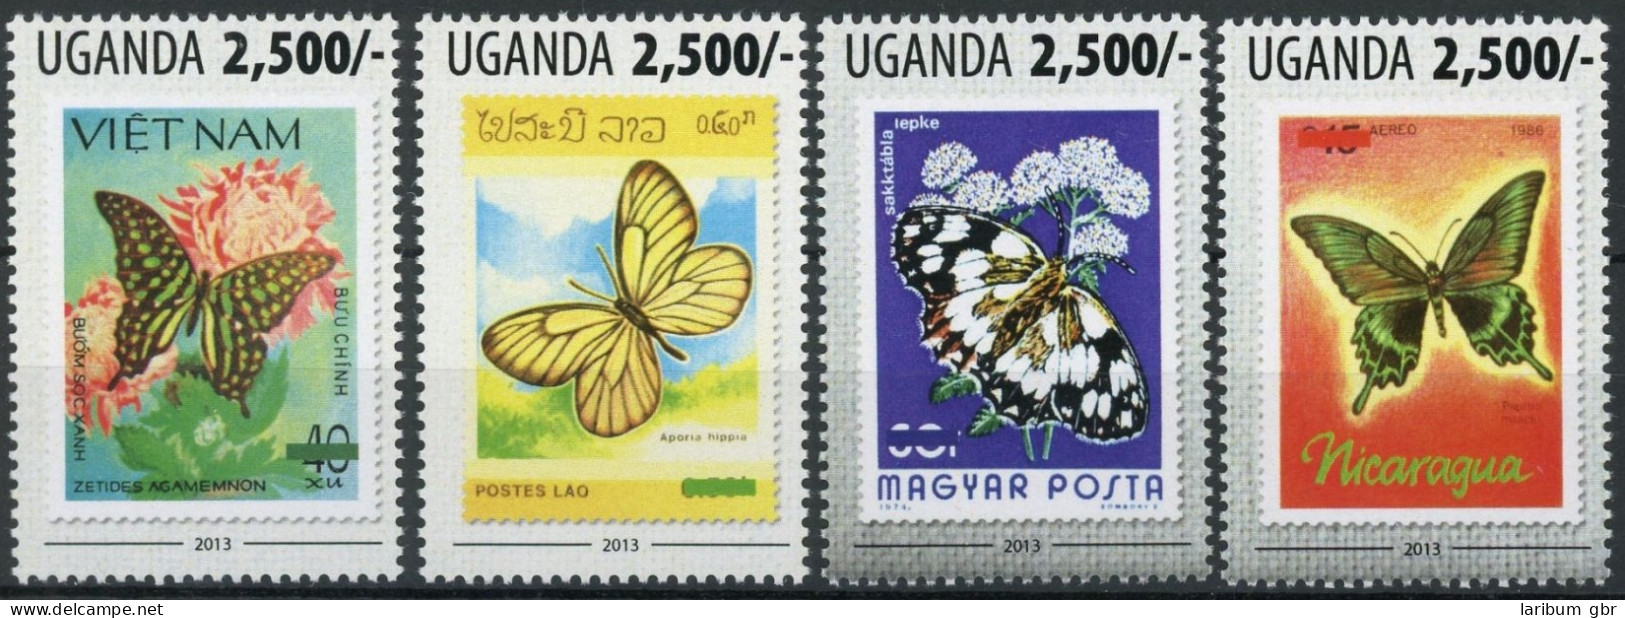 Uganda Einzelmarken 3127-3130 Postfrisch Schmetterling #HF388 - Uganda (1962-...)